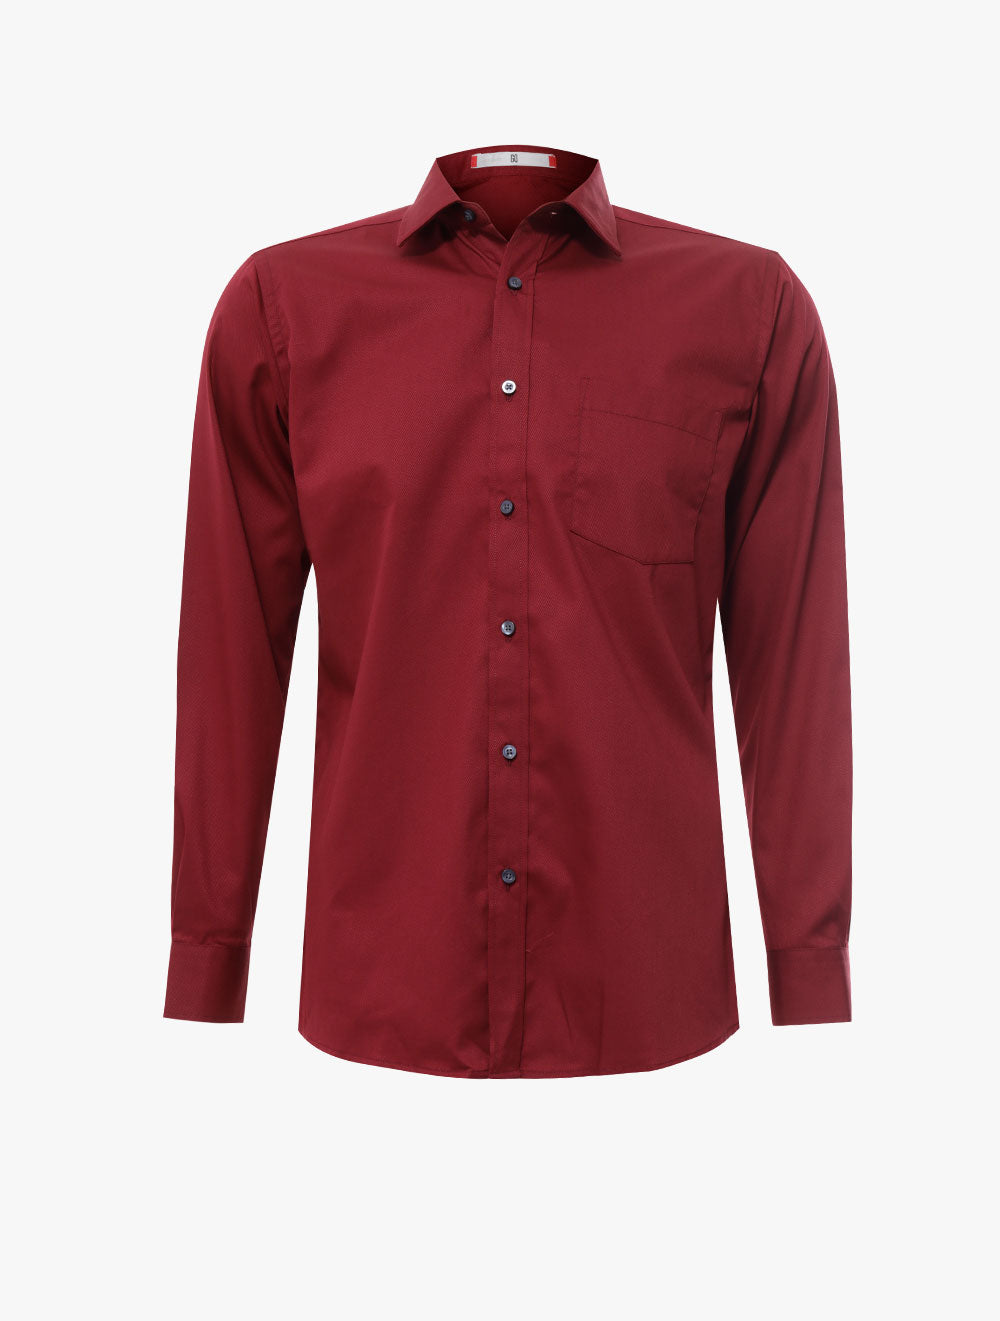 GQ
Modern Fit Long Sleeve Shirt - 2723065